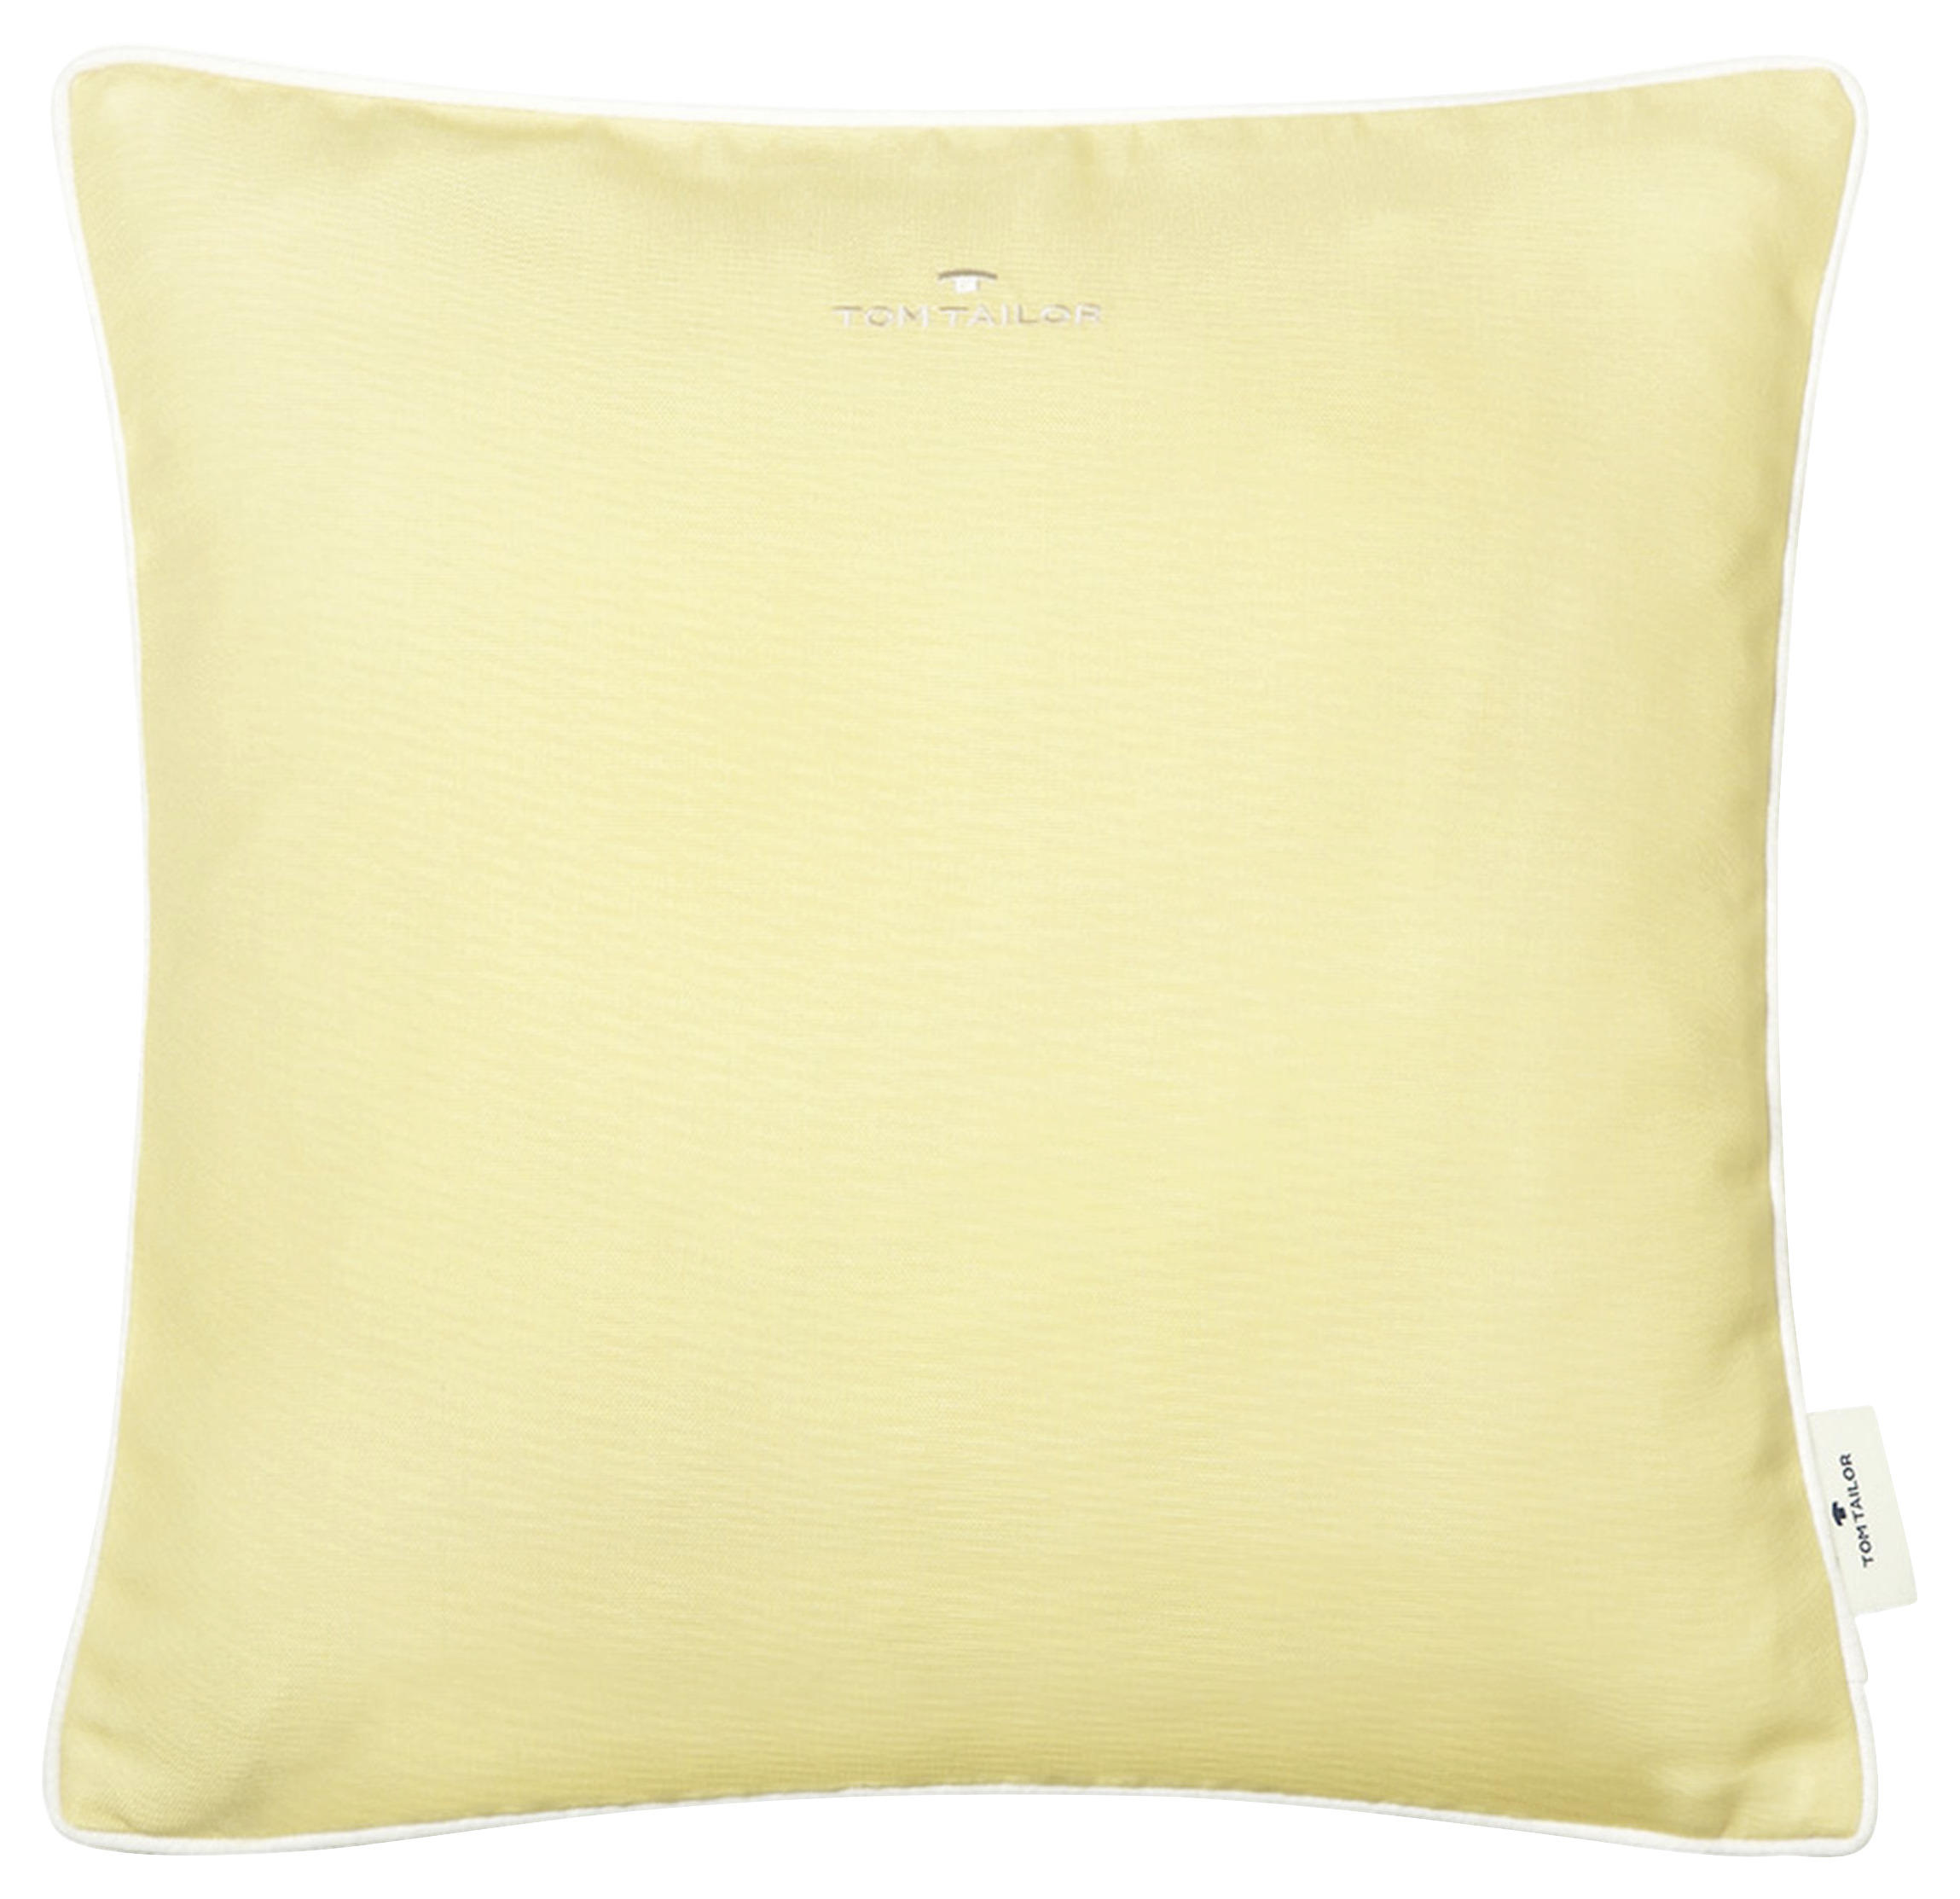 KISSENHÜLLE Dove Signature 40/40 cm  - Gelb, KONVENTIONELL, Textil (40/40cm) - Tom Tailor